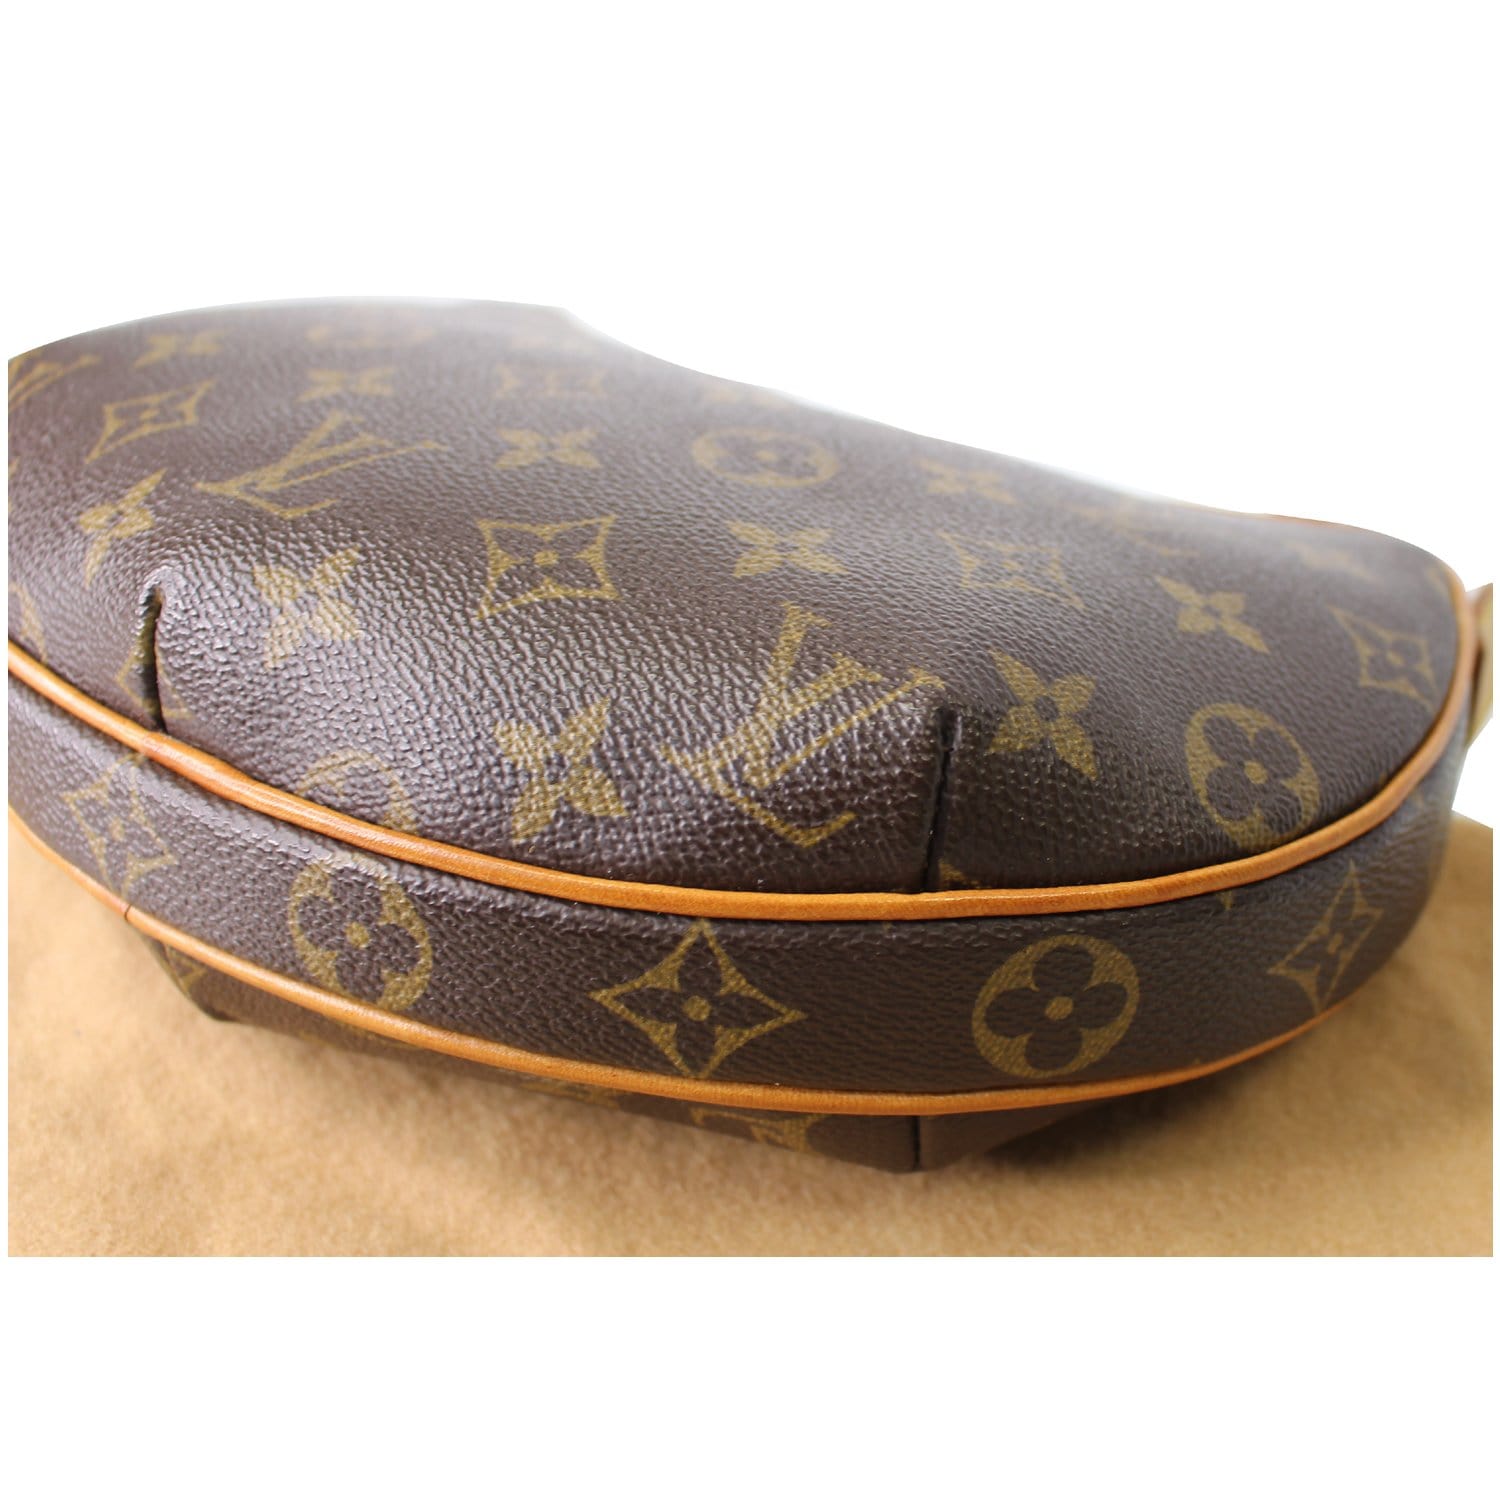 Louis Vuitton Croissant Handbag Monogram Canvas PM